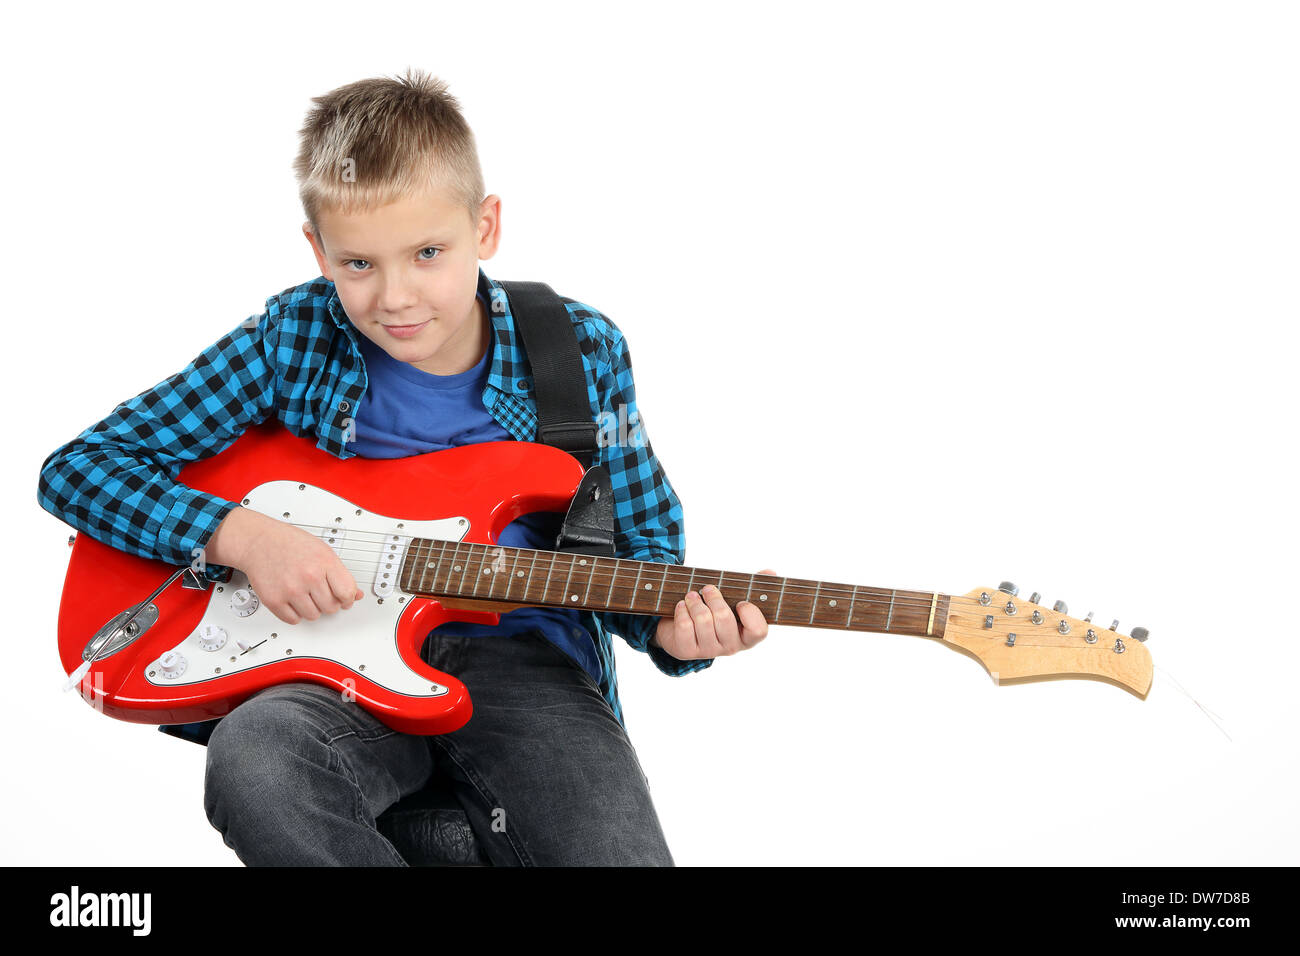 Hübscher kleiner Junge spielt auf rote e-Gitarre auf weißem Hintergrund  Stockfotografie - Alamy